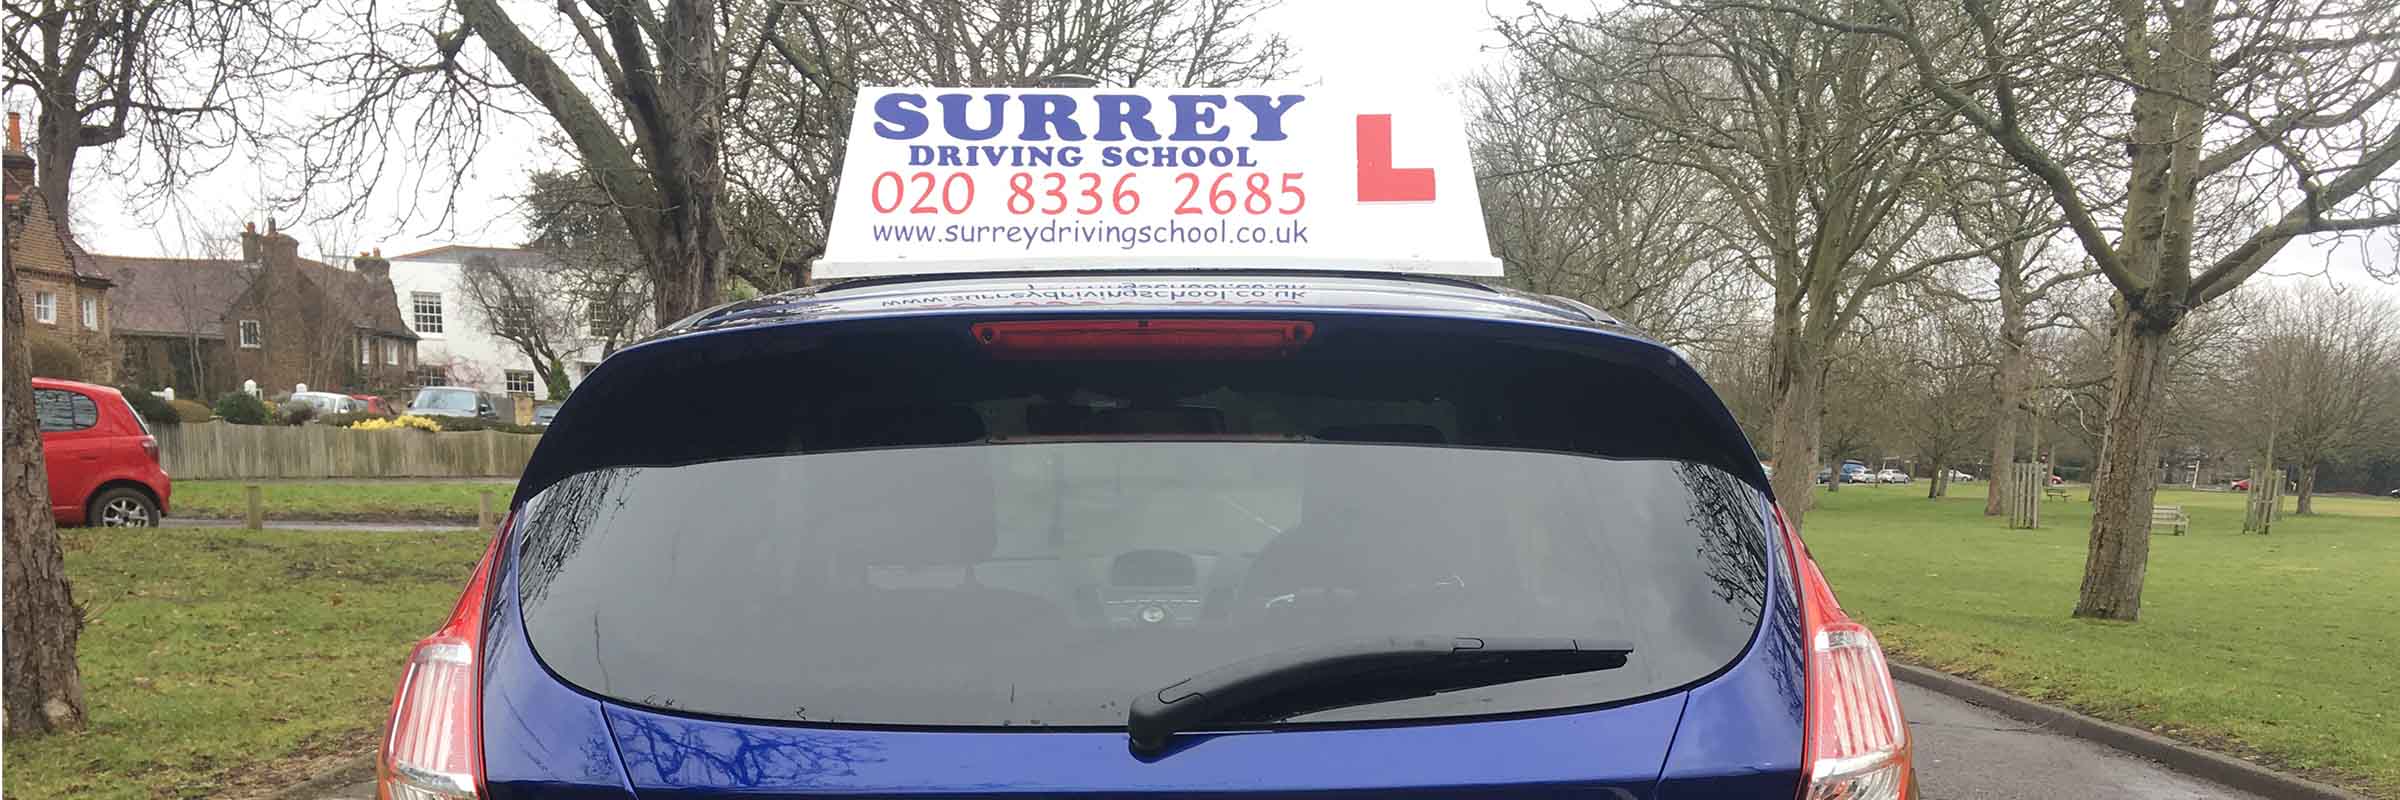 Surrey Driving School - useful links